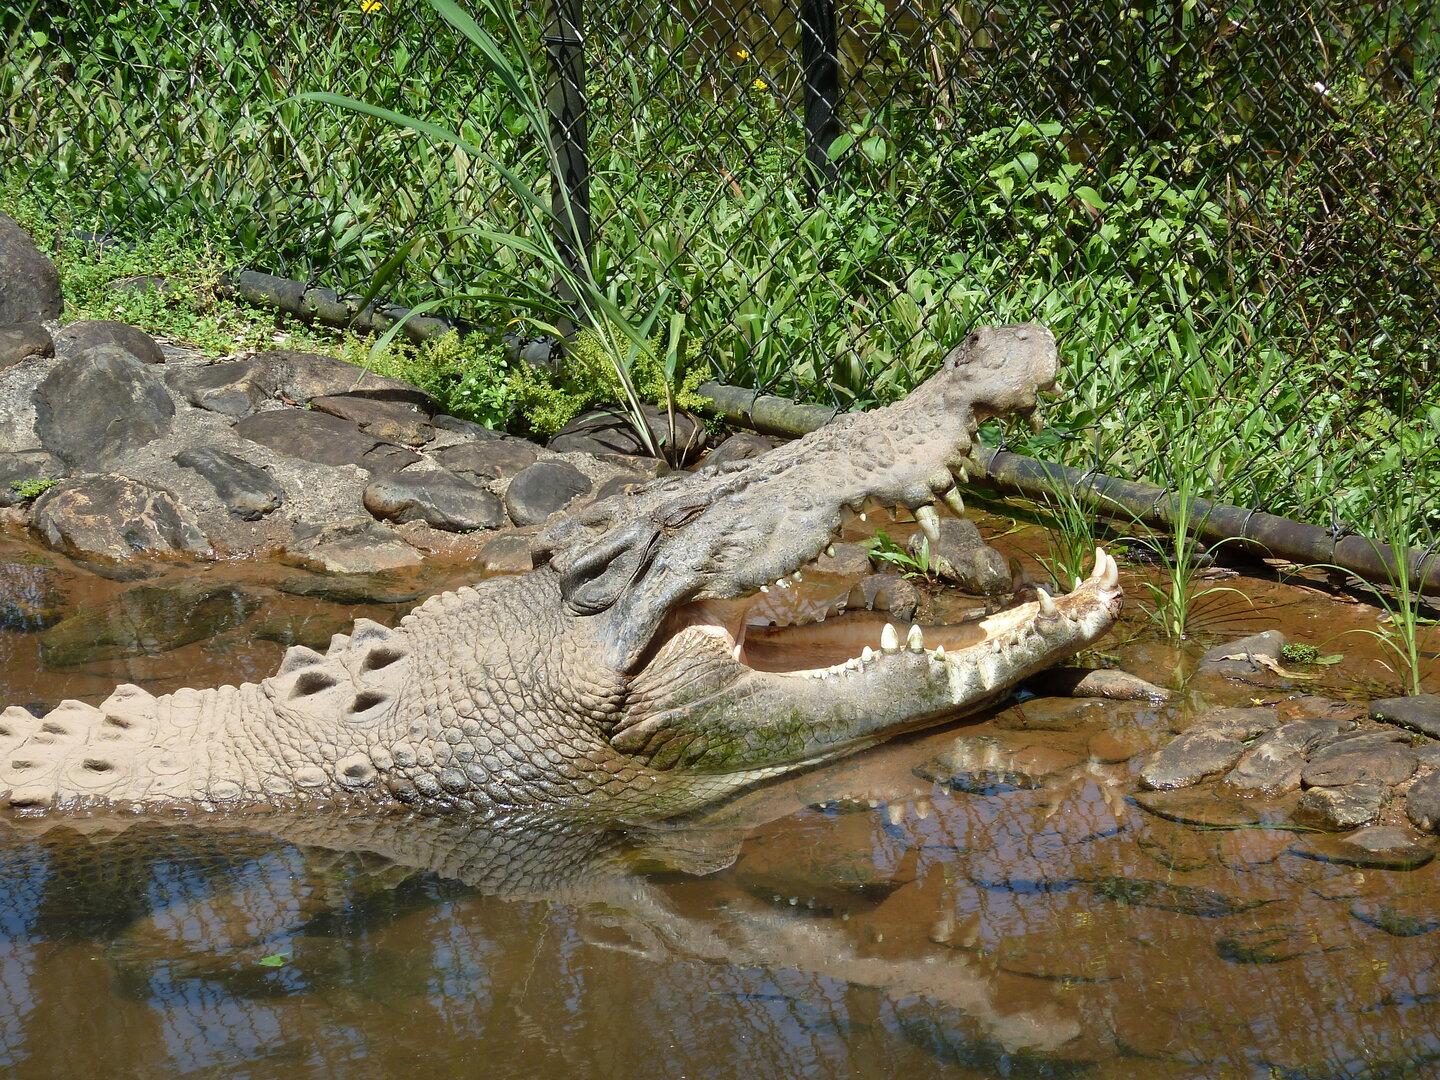 Krokodil nach tödlichem Angriff auf Kind erschossen